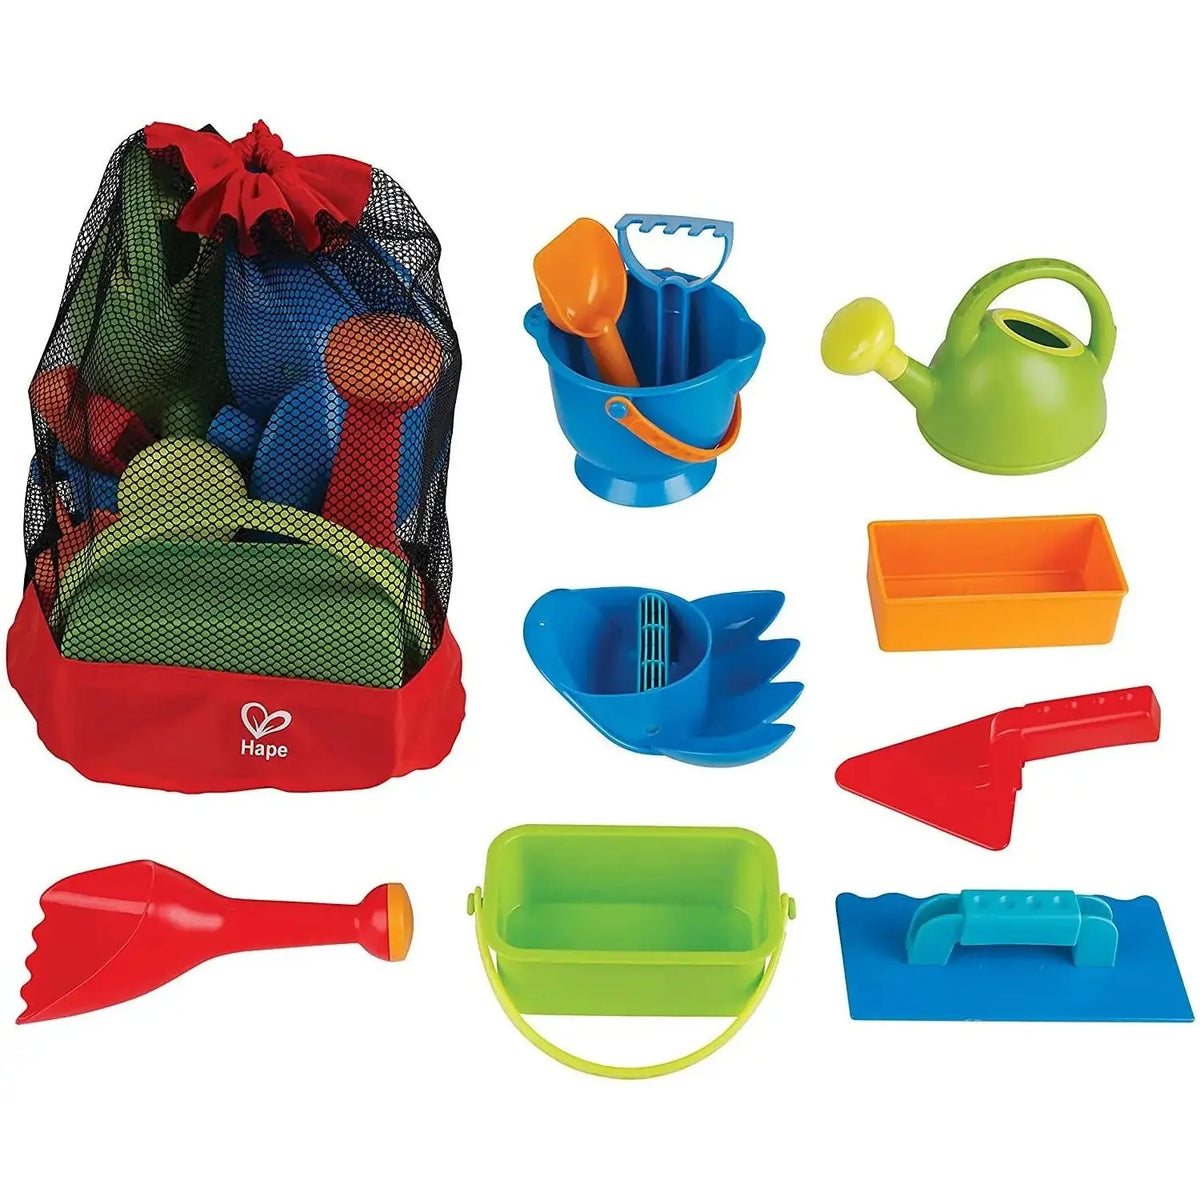 Anti-sand Backpack, Park Bag, Beach Toys, Mesh Children's Backpack